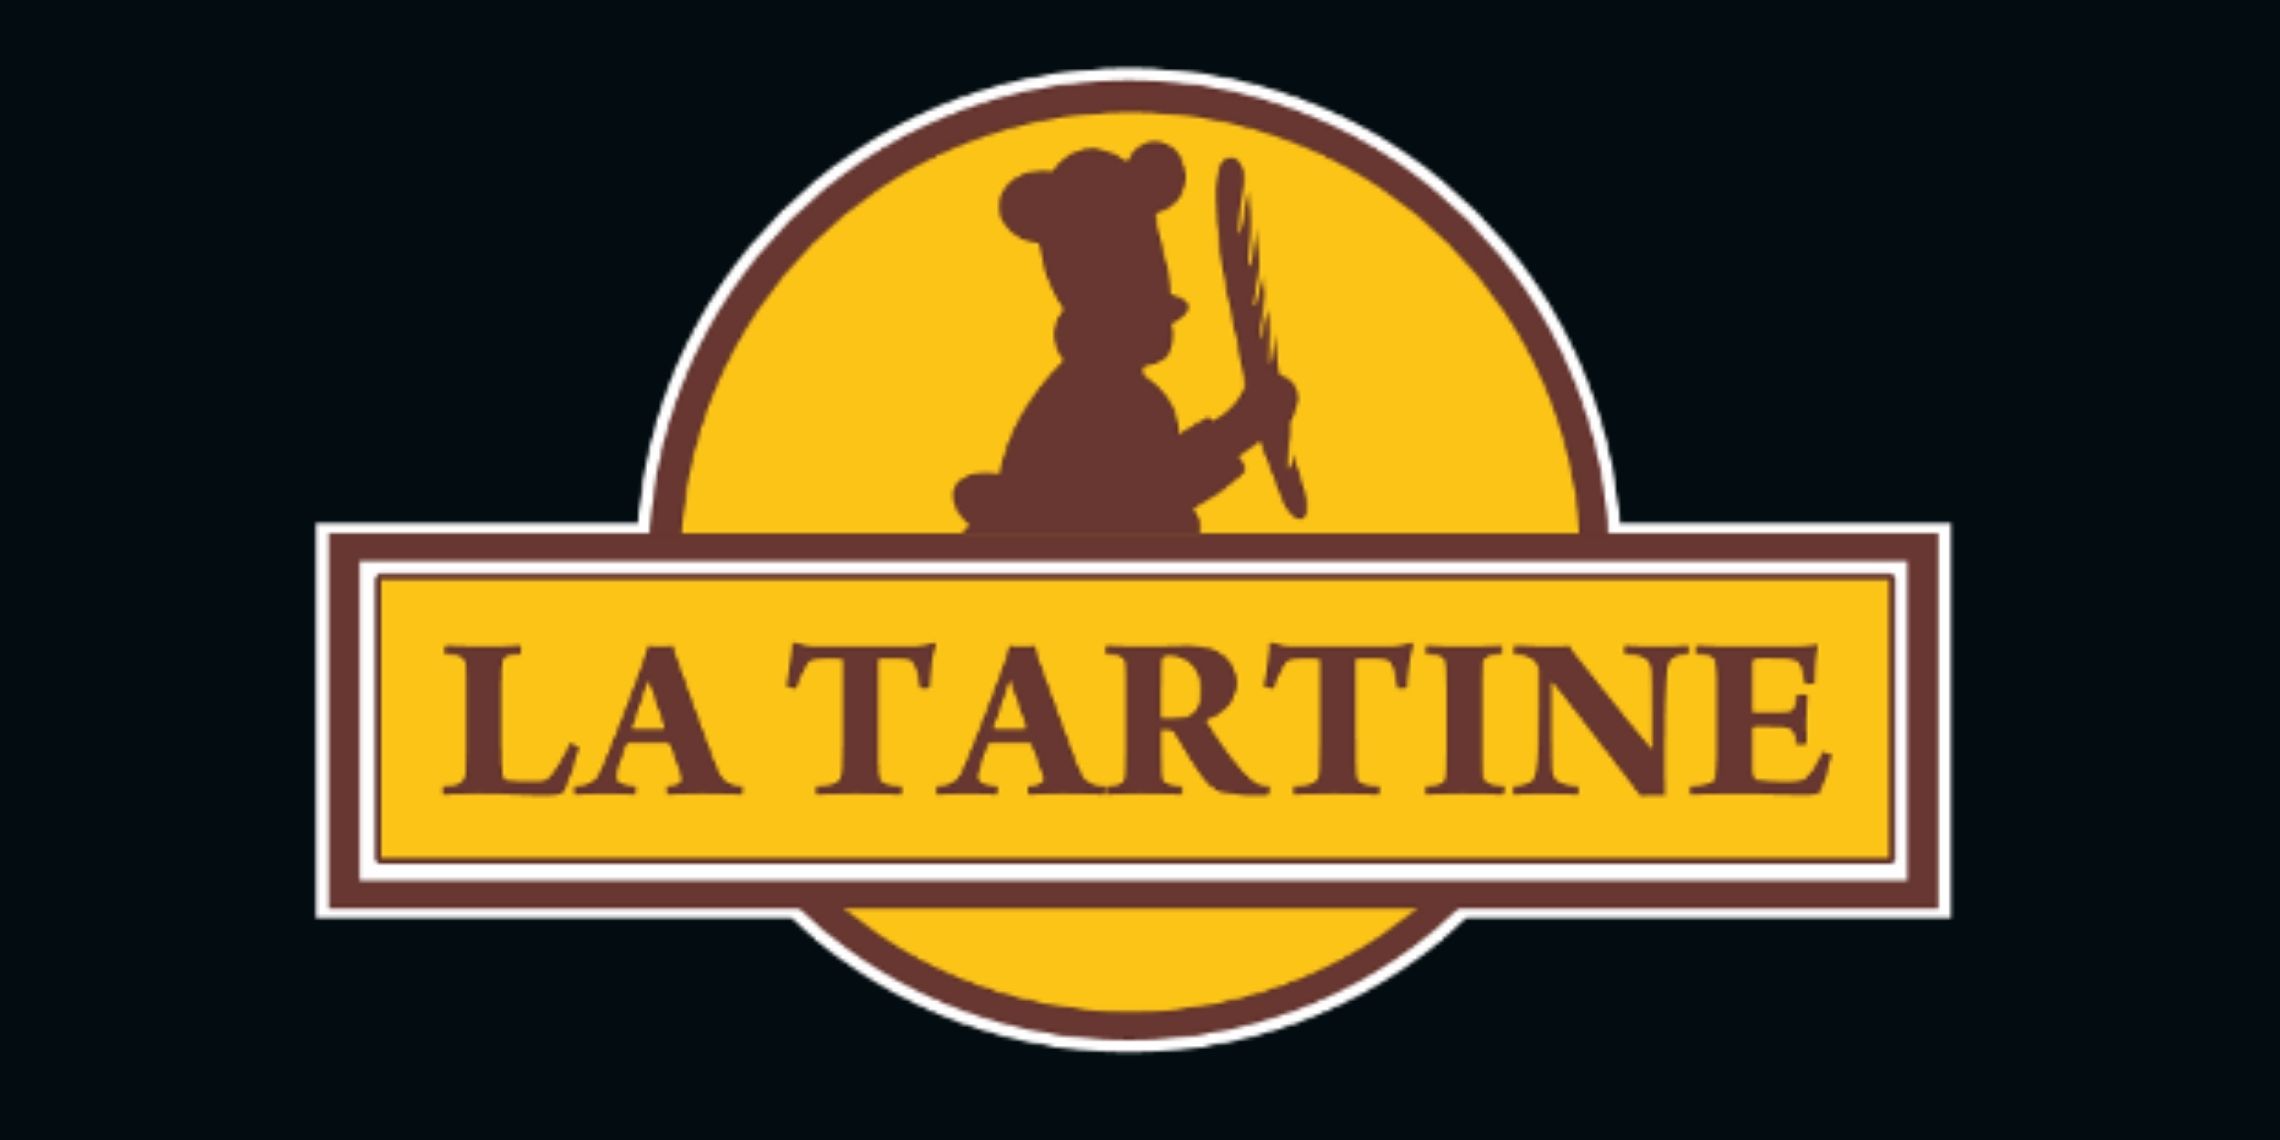 La Tartine